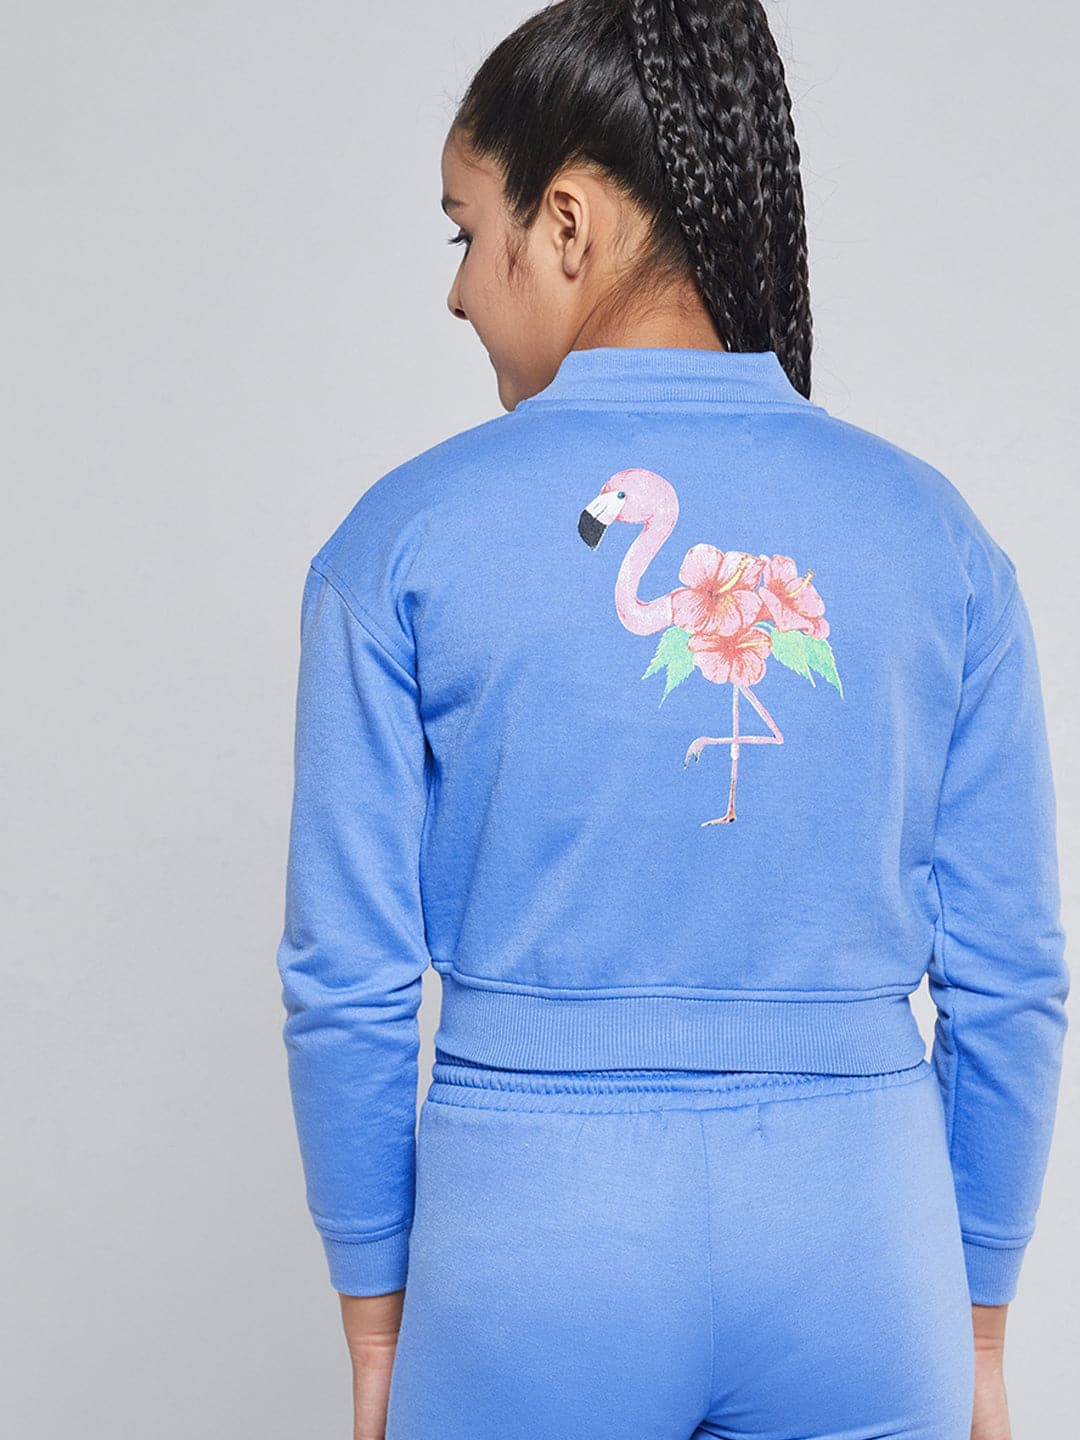 Girls Blue Fleece Flamingo Bomber Jacket-Girls Jacket-SASSAFRAS